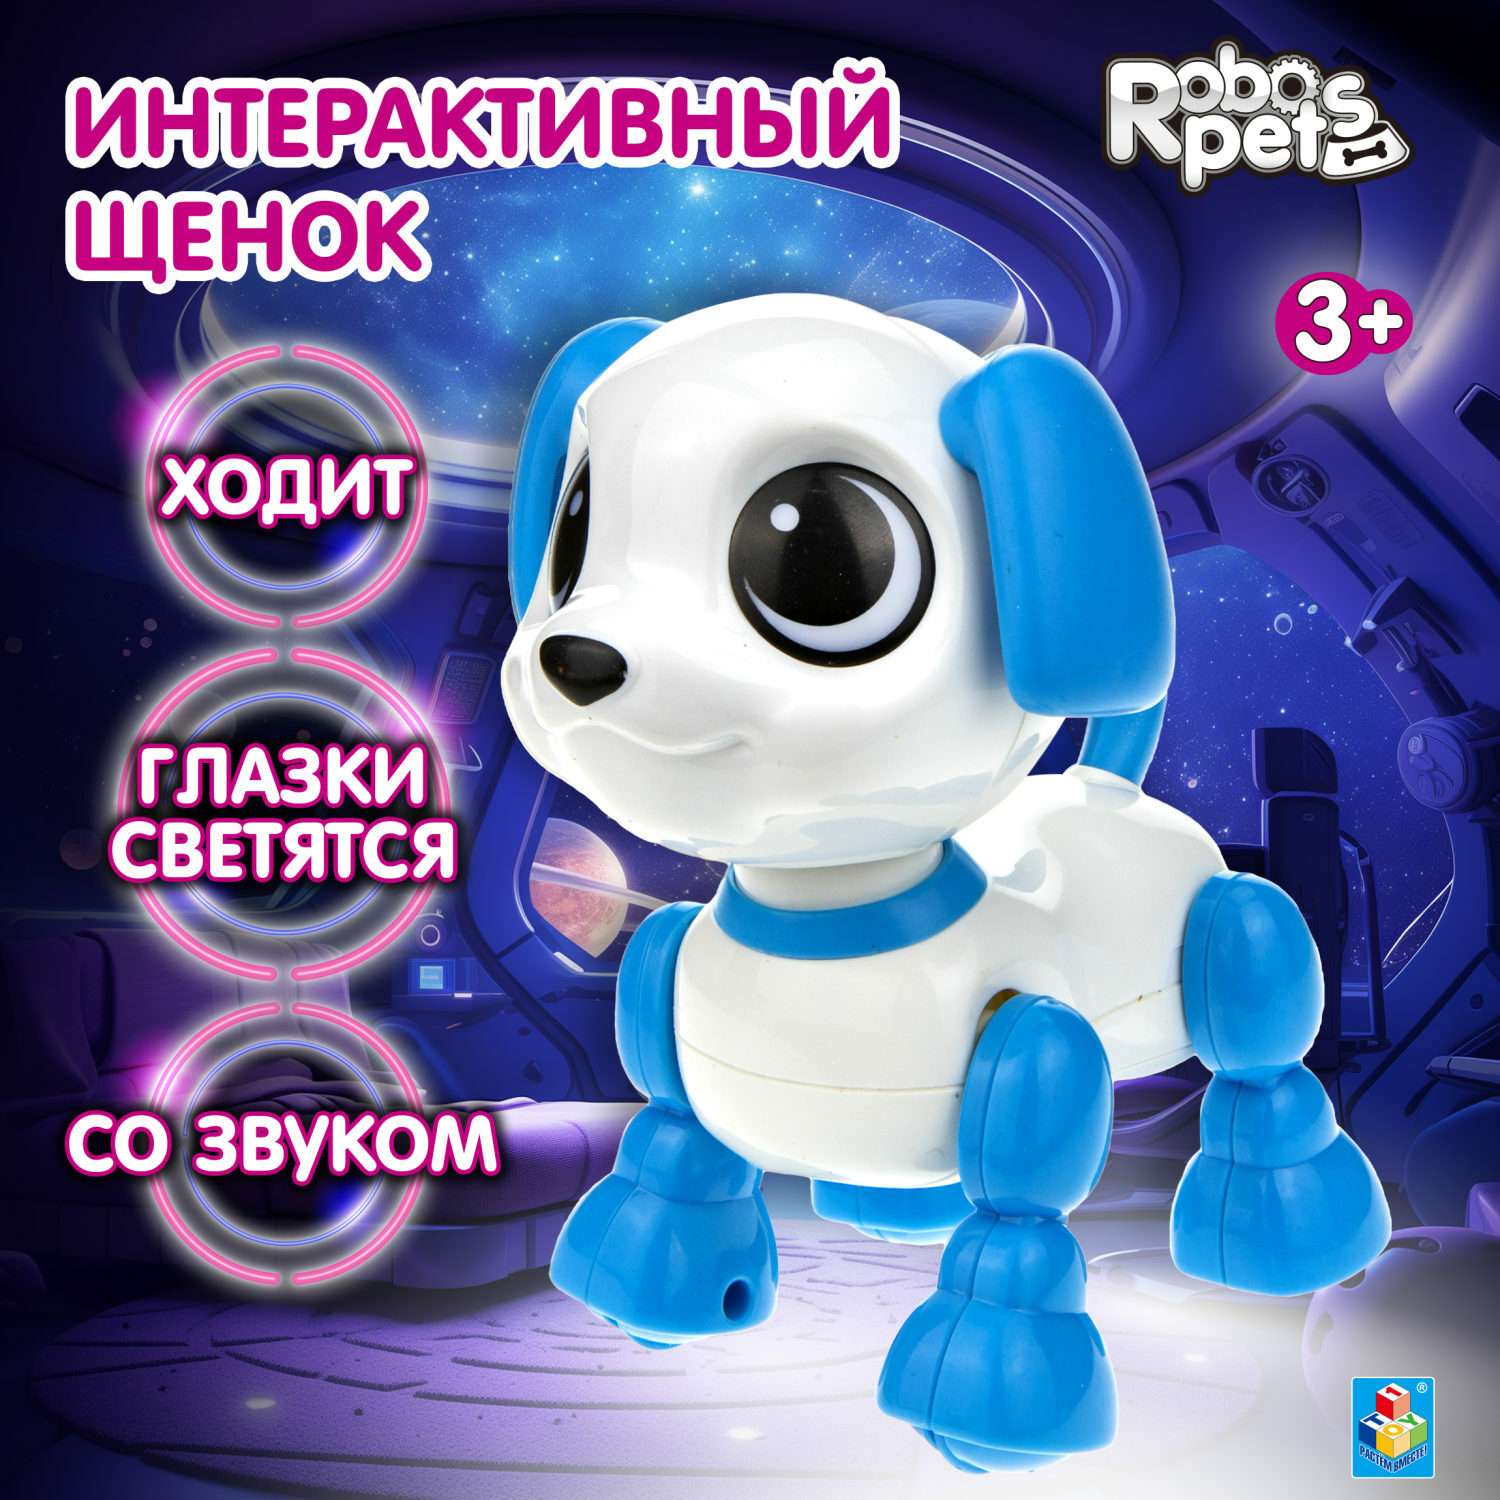 Интерактивная игрушка Robo Pets щенок белый и голубой - фото 1